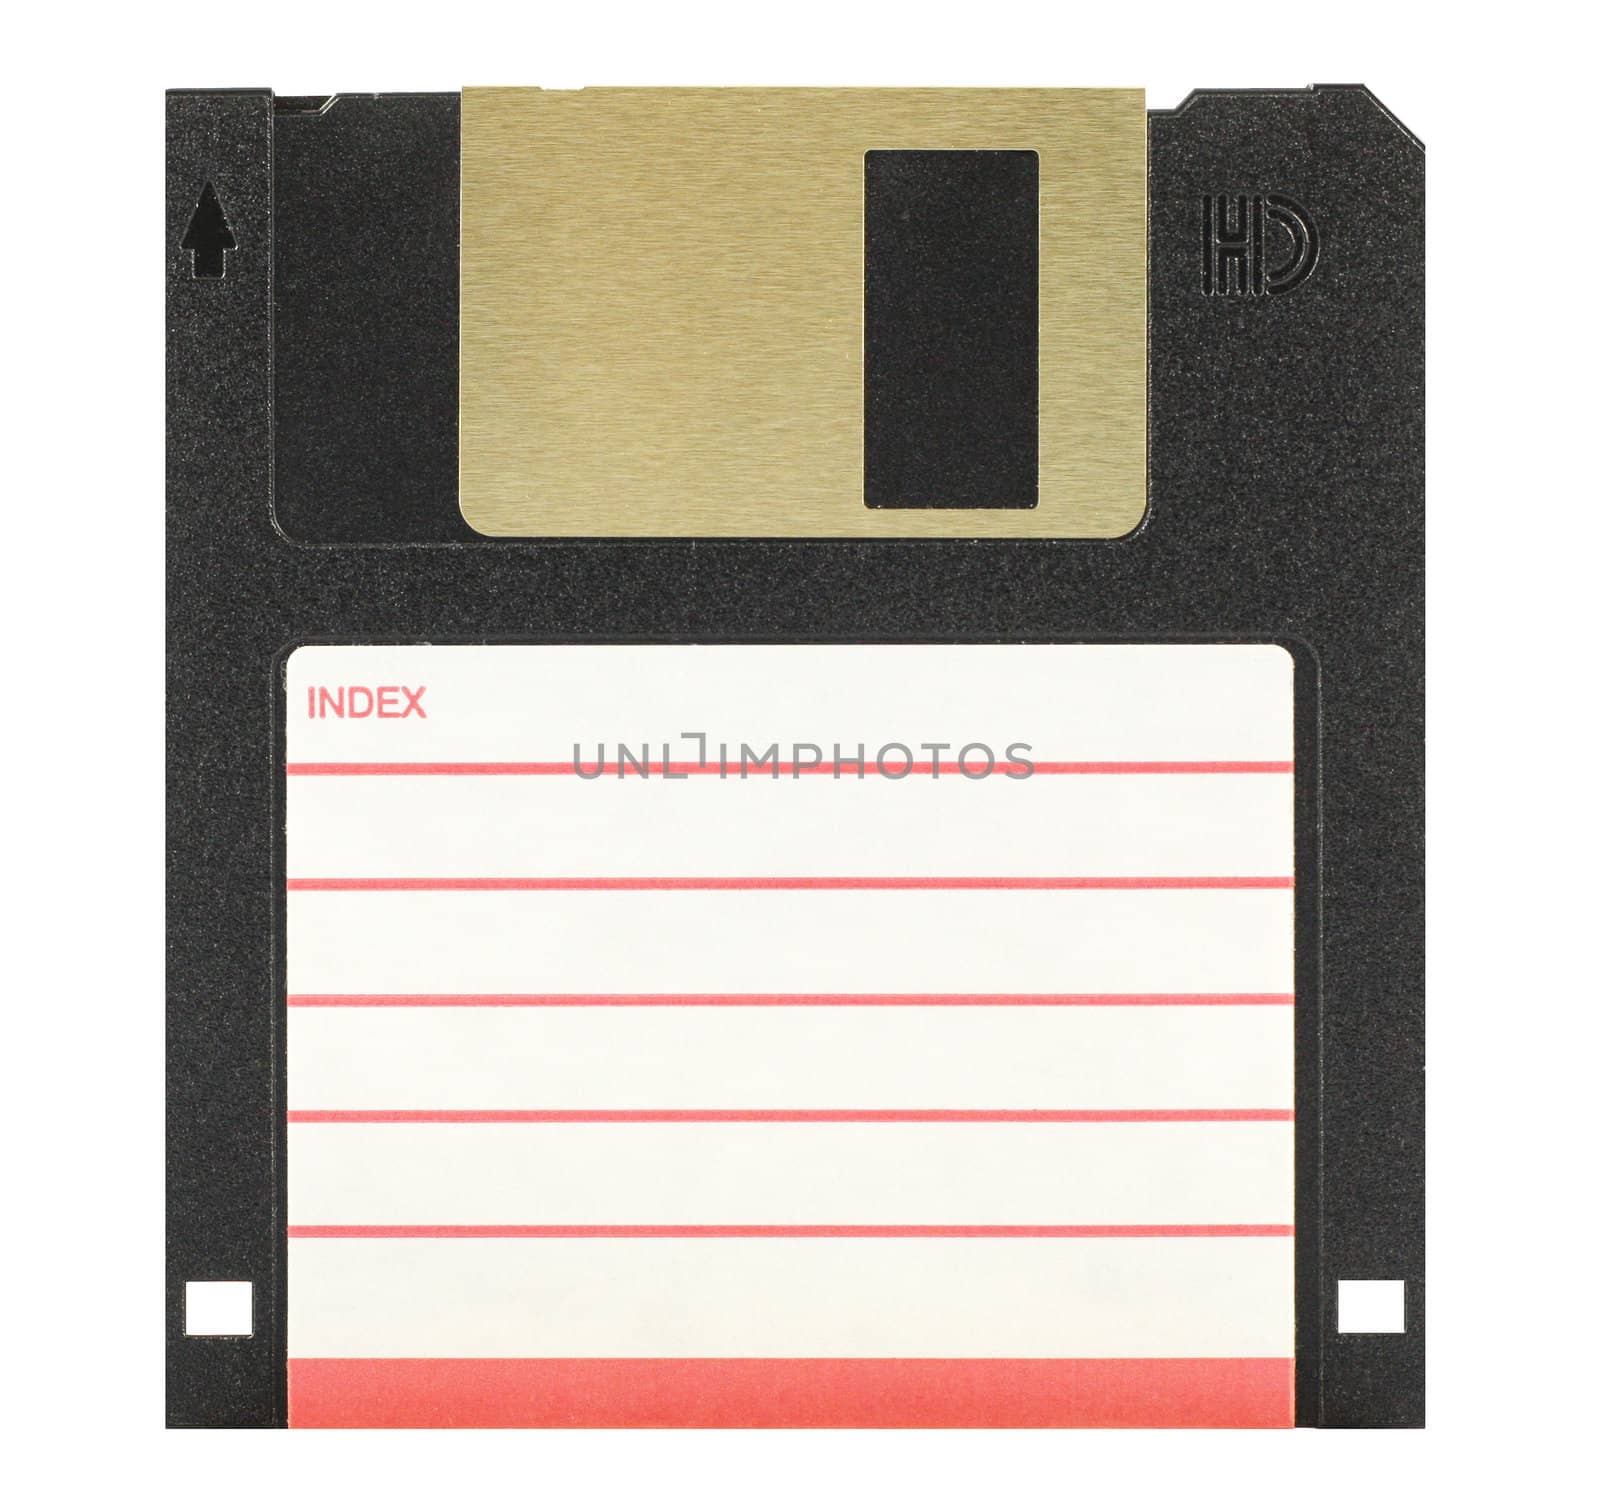 3.5'' inch floppy disk by Georgios